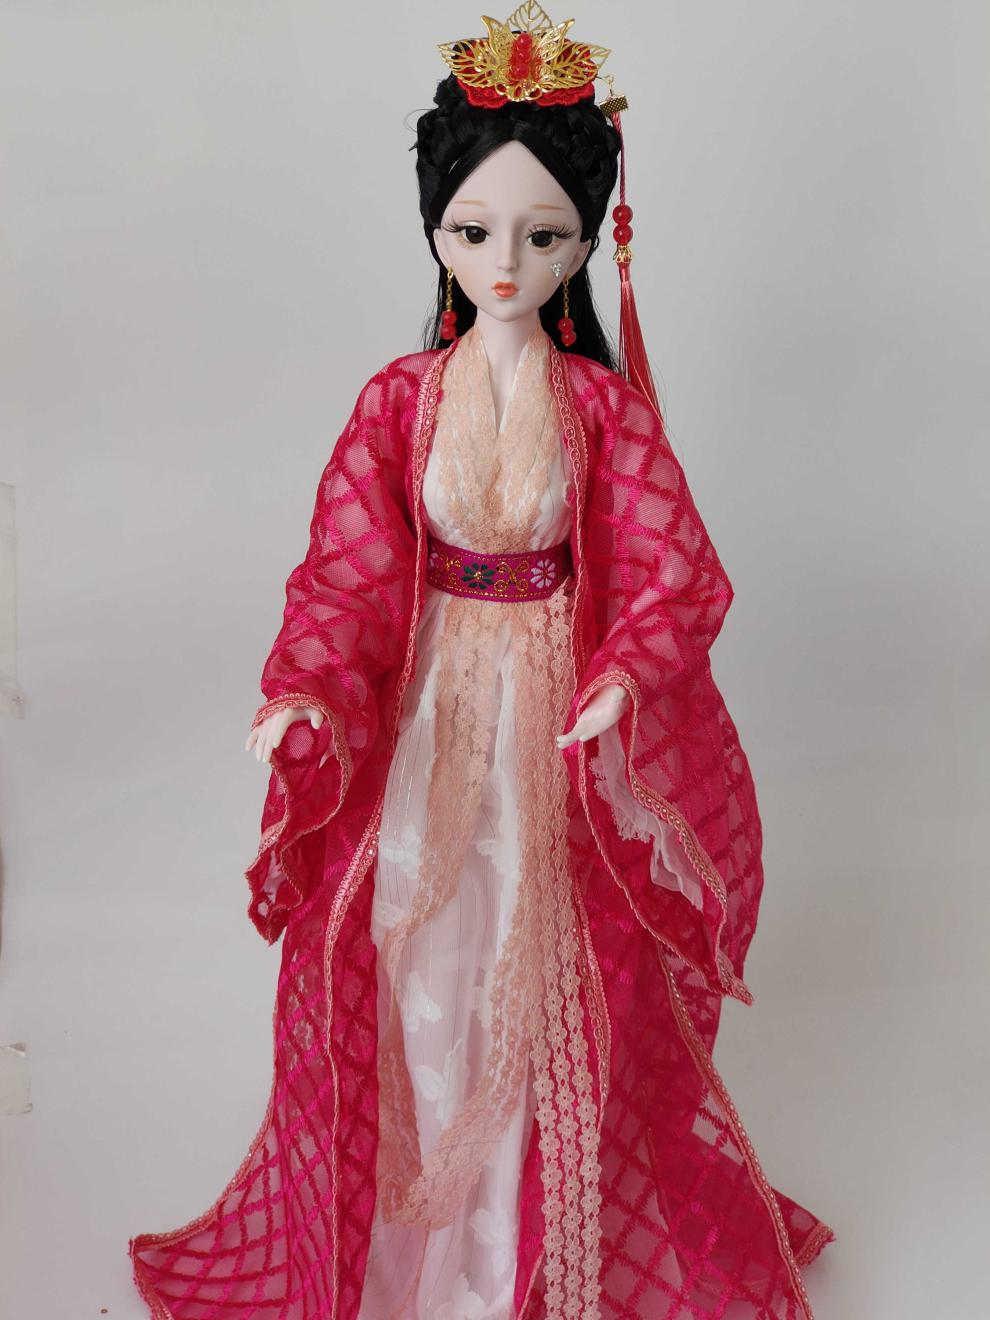 迪美芭比娃娃60厘米古风古装仿德芭比娃娃玩具女孩套装大号古代中国